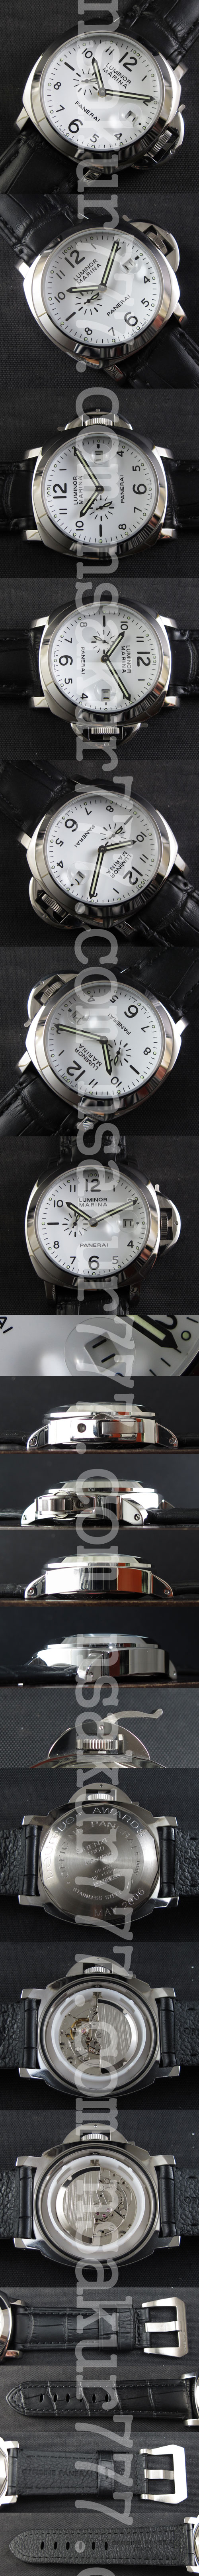 【販促活動中】パネライ ルミノール マリーナ PAM70メンズ腕時計